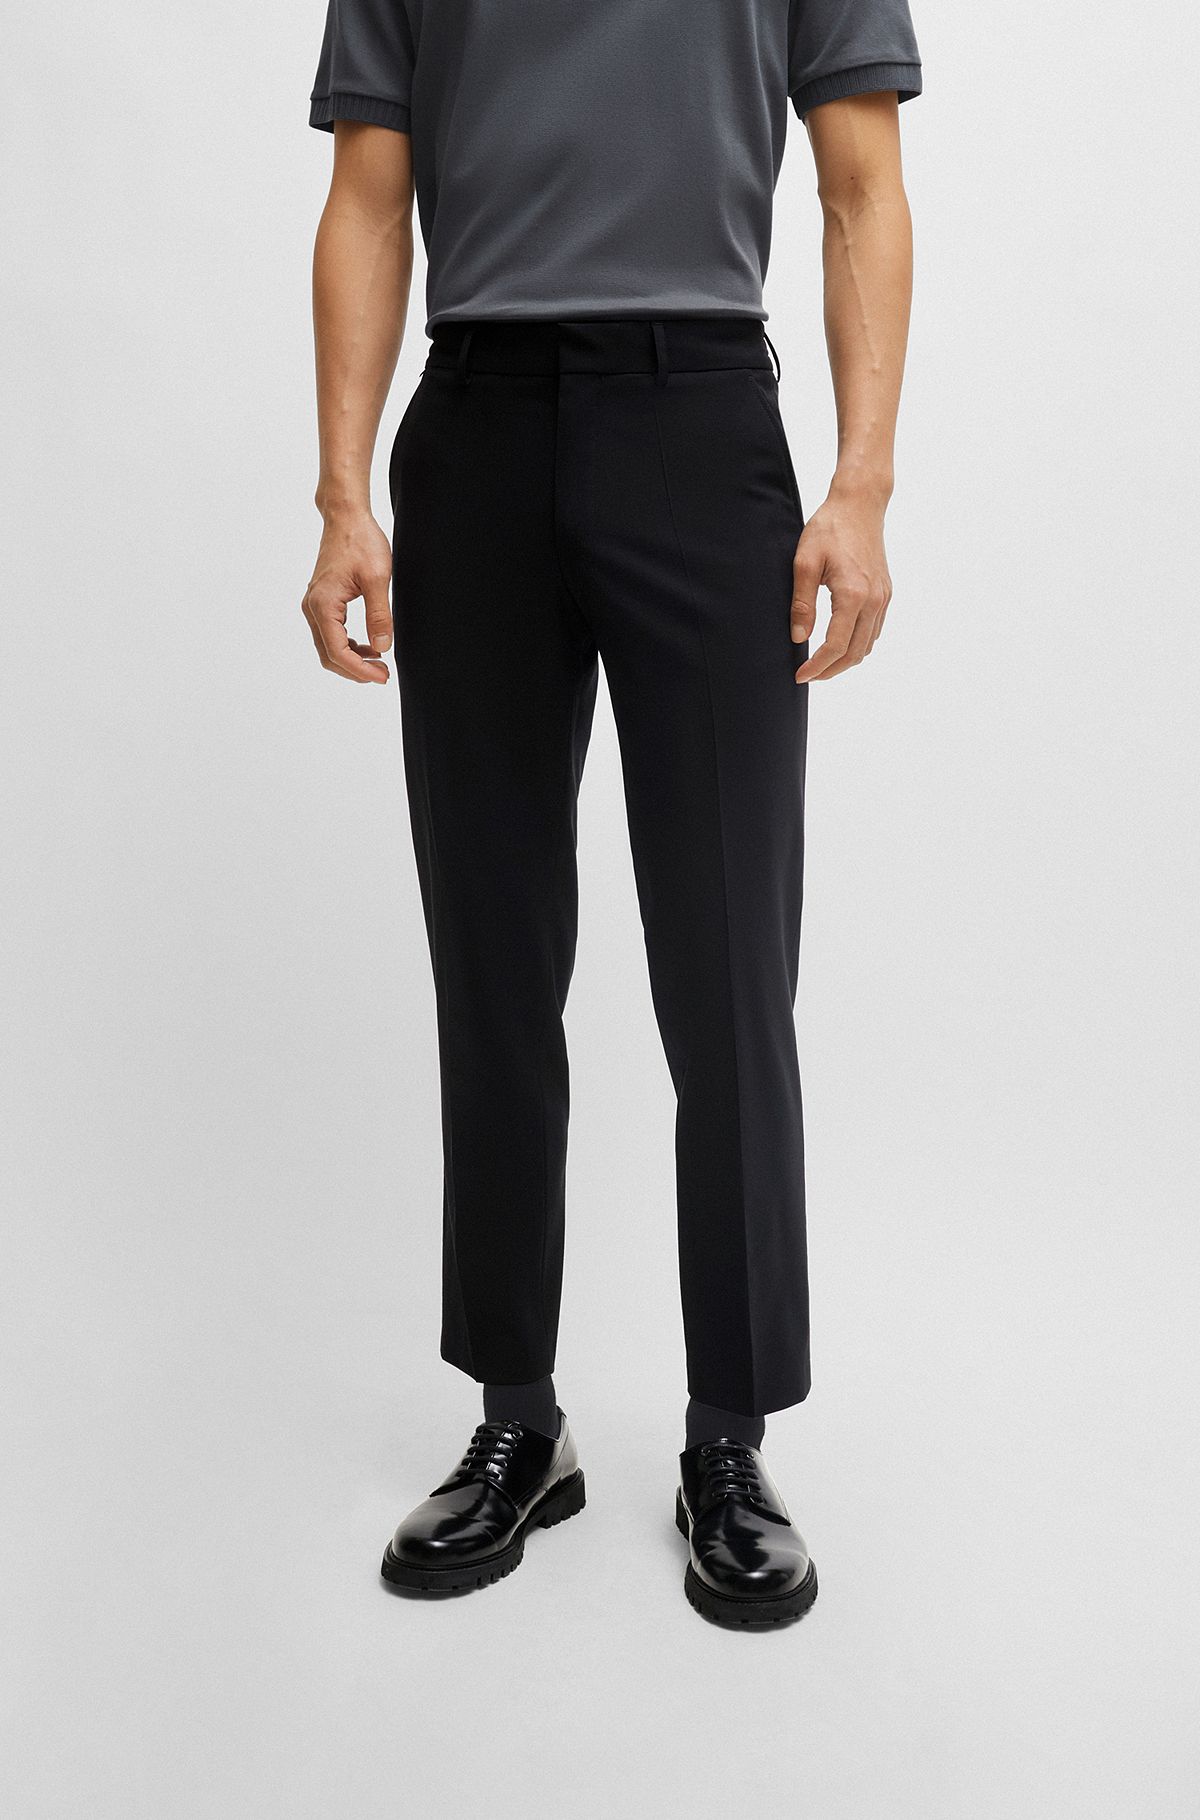 Pantalones slim fit de mezcla de lana elástica técnica, Negro